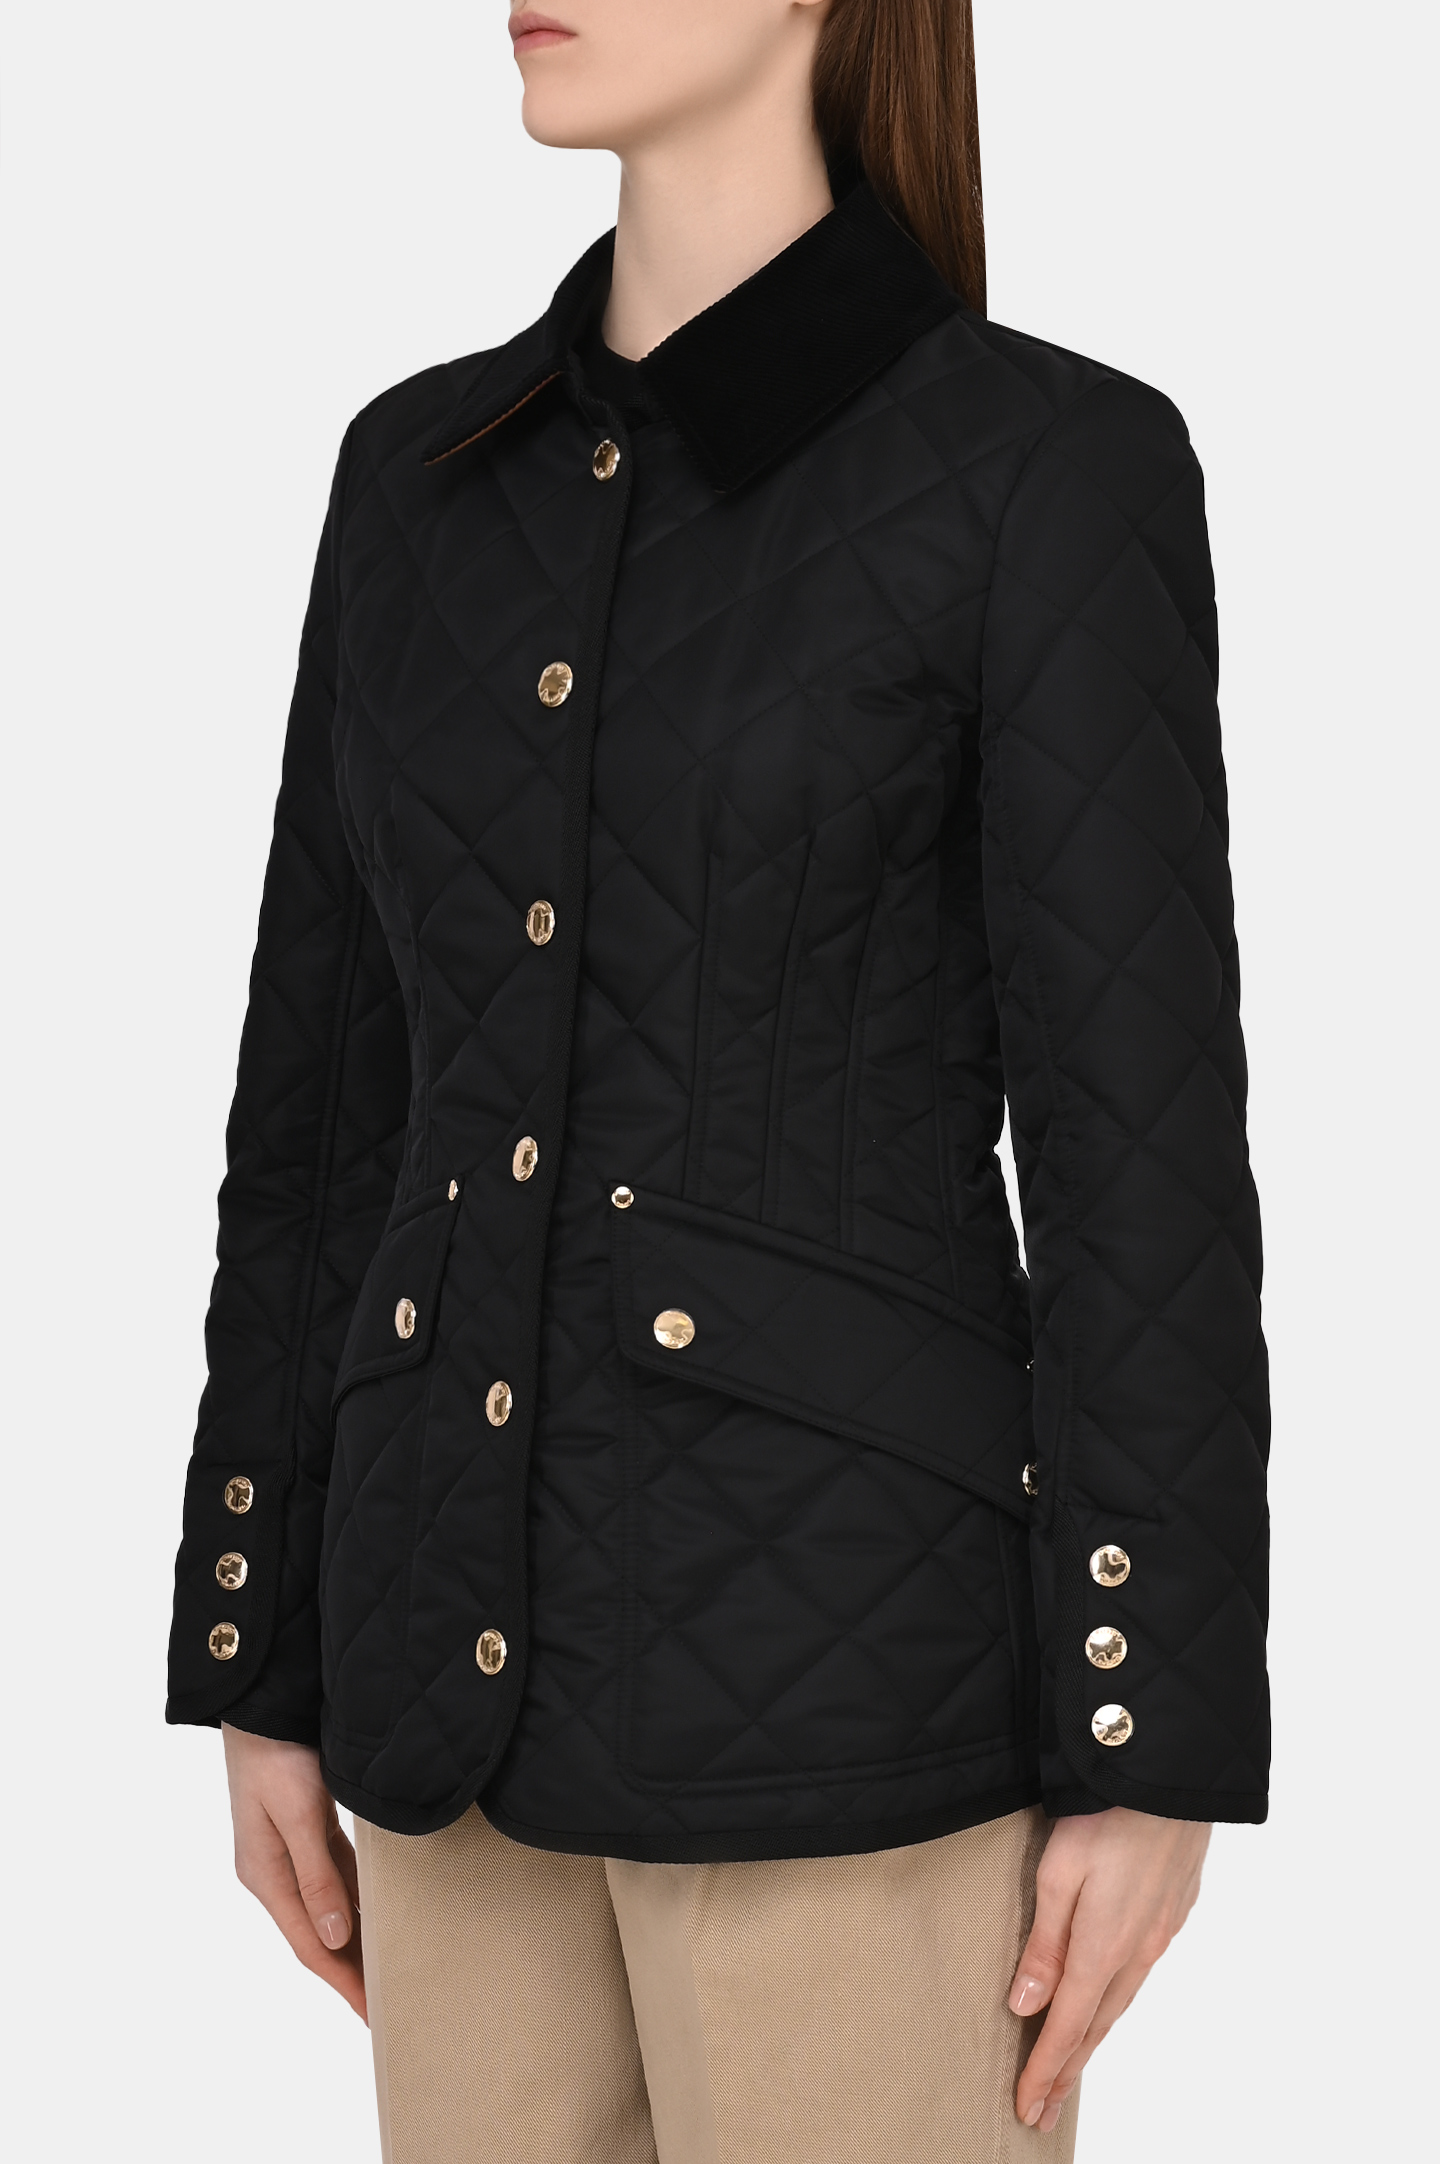 Куртка BURBERRY 8051724, цвет: Черный, Женский